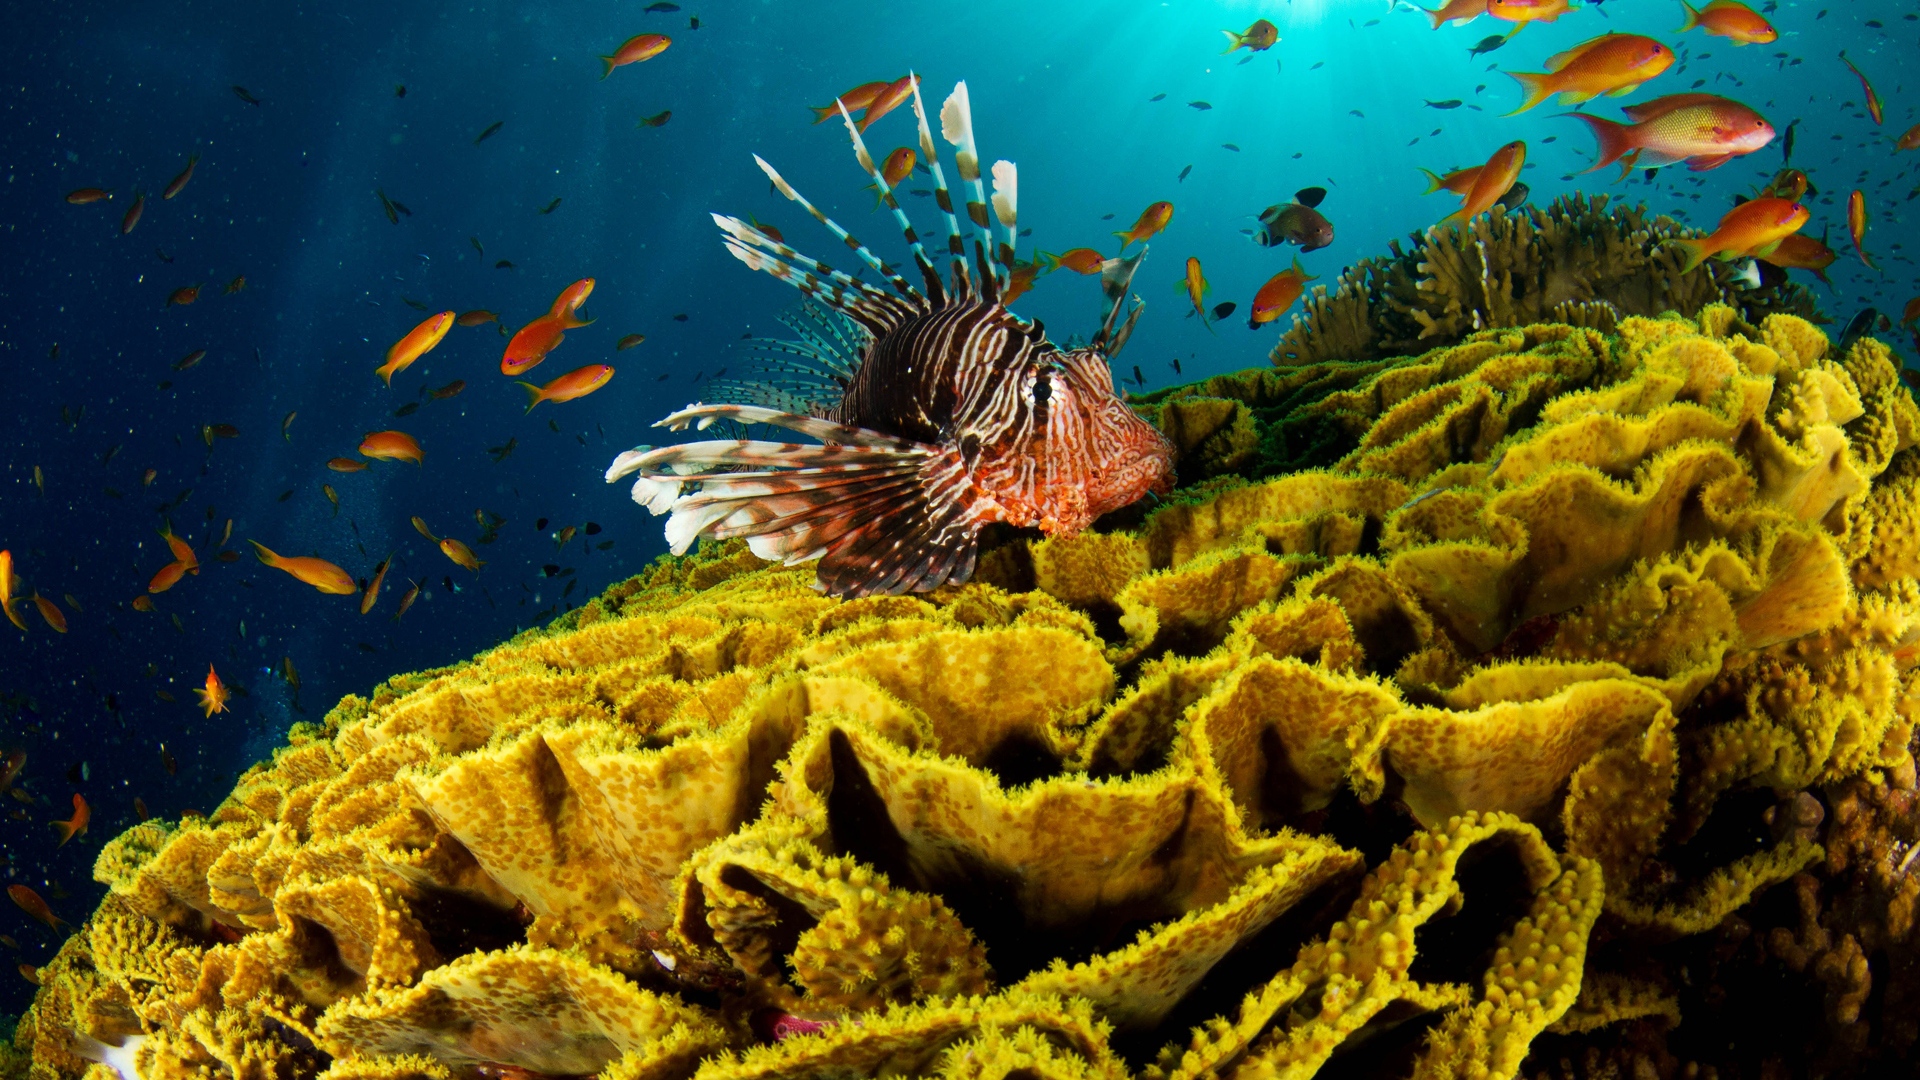 Underwater Wallpapers HD | PixelsTalk.Net
